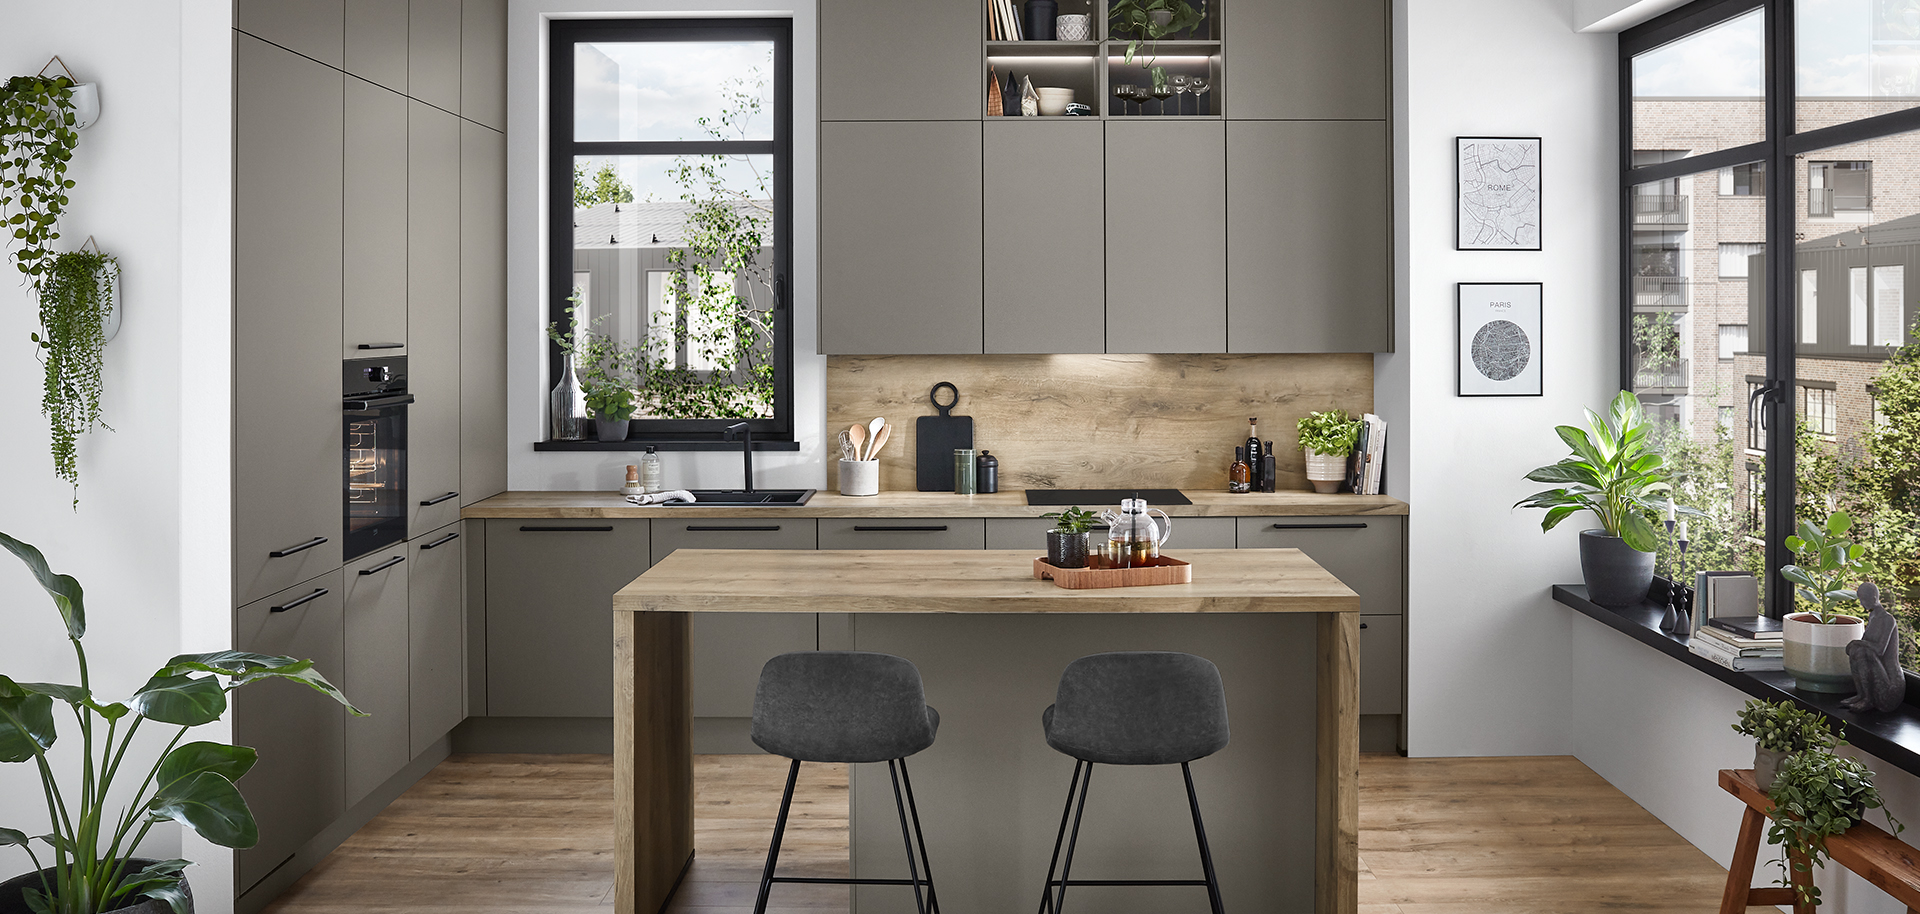 Design moderno della cucina con eleganti armadi grigi, pavimenti in legno, un'isola centrale con sgabelli e luce naturale completata da piante d'appartamento.